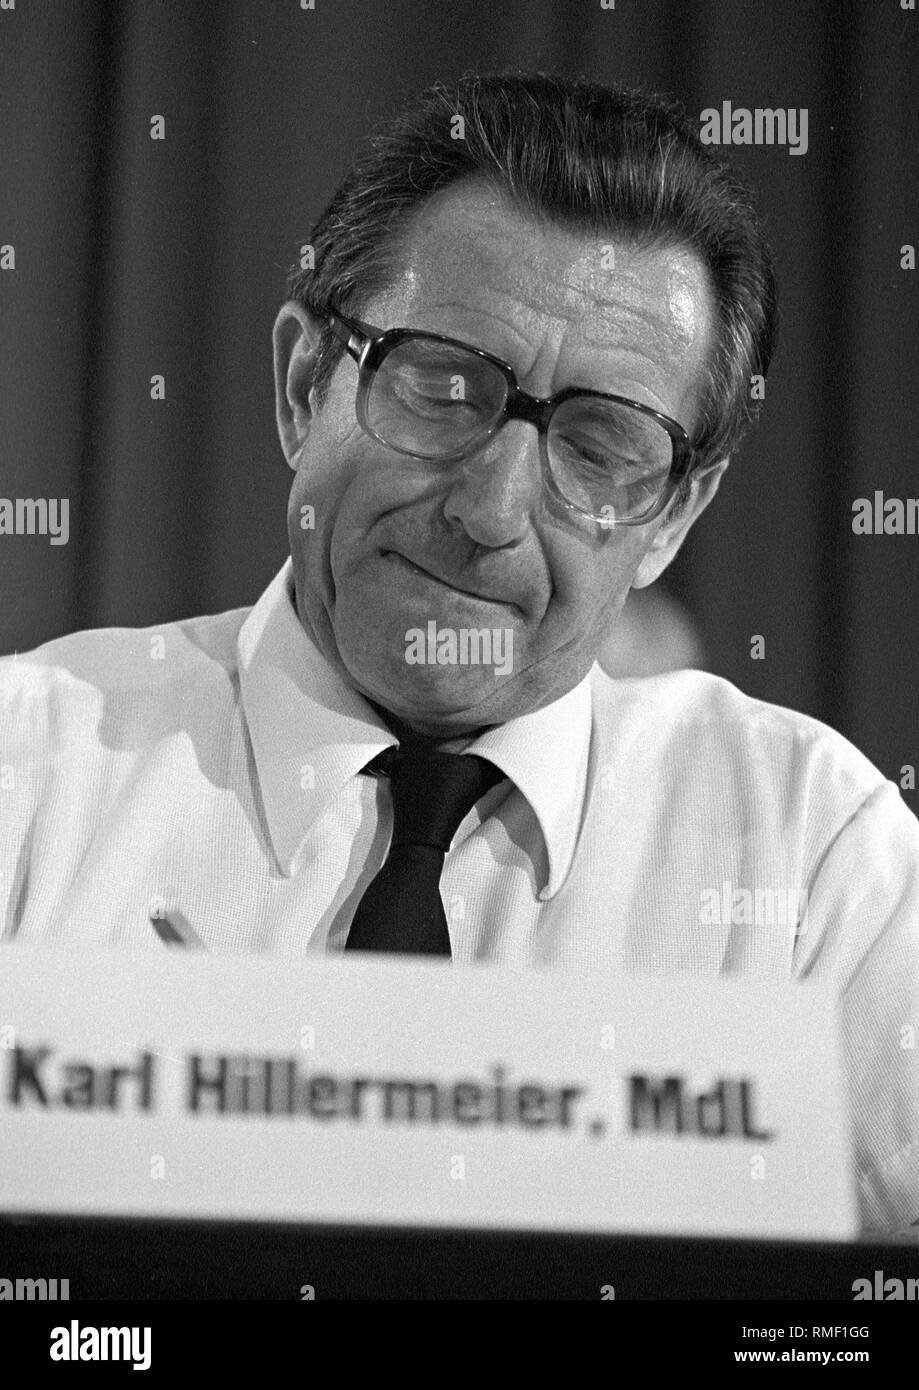 Karl Hillermeier - * 01.12.1922, einer bayerischen CSU-Politiker und Staatsminister im 43. CSU-Parteitag am 16.07. 1983 in München. Zwischen 1974 - 1982 Minister der Justiz in Bayern war, zwischen 1982 - 1986 der Innenminister in Bayern und zwischen 1986 - 1988 Minister für Arbeit und soziale Angelegenheiten in Bayern. Stockfoto